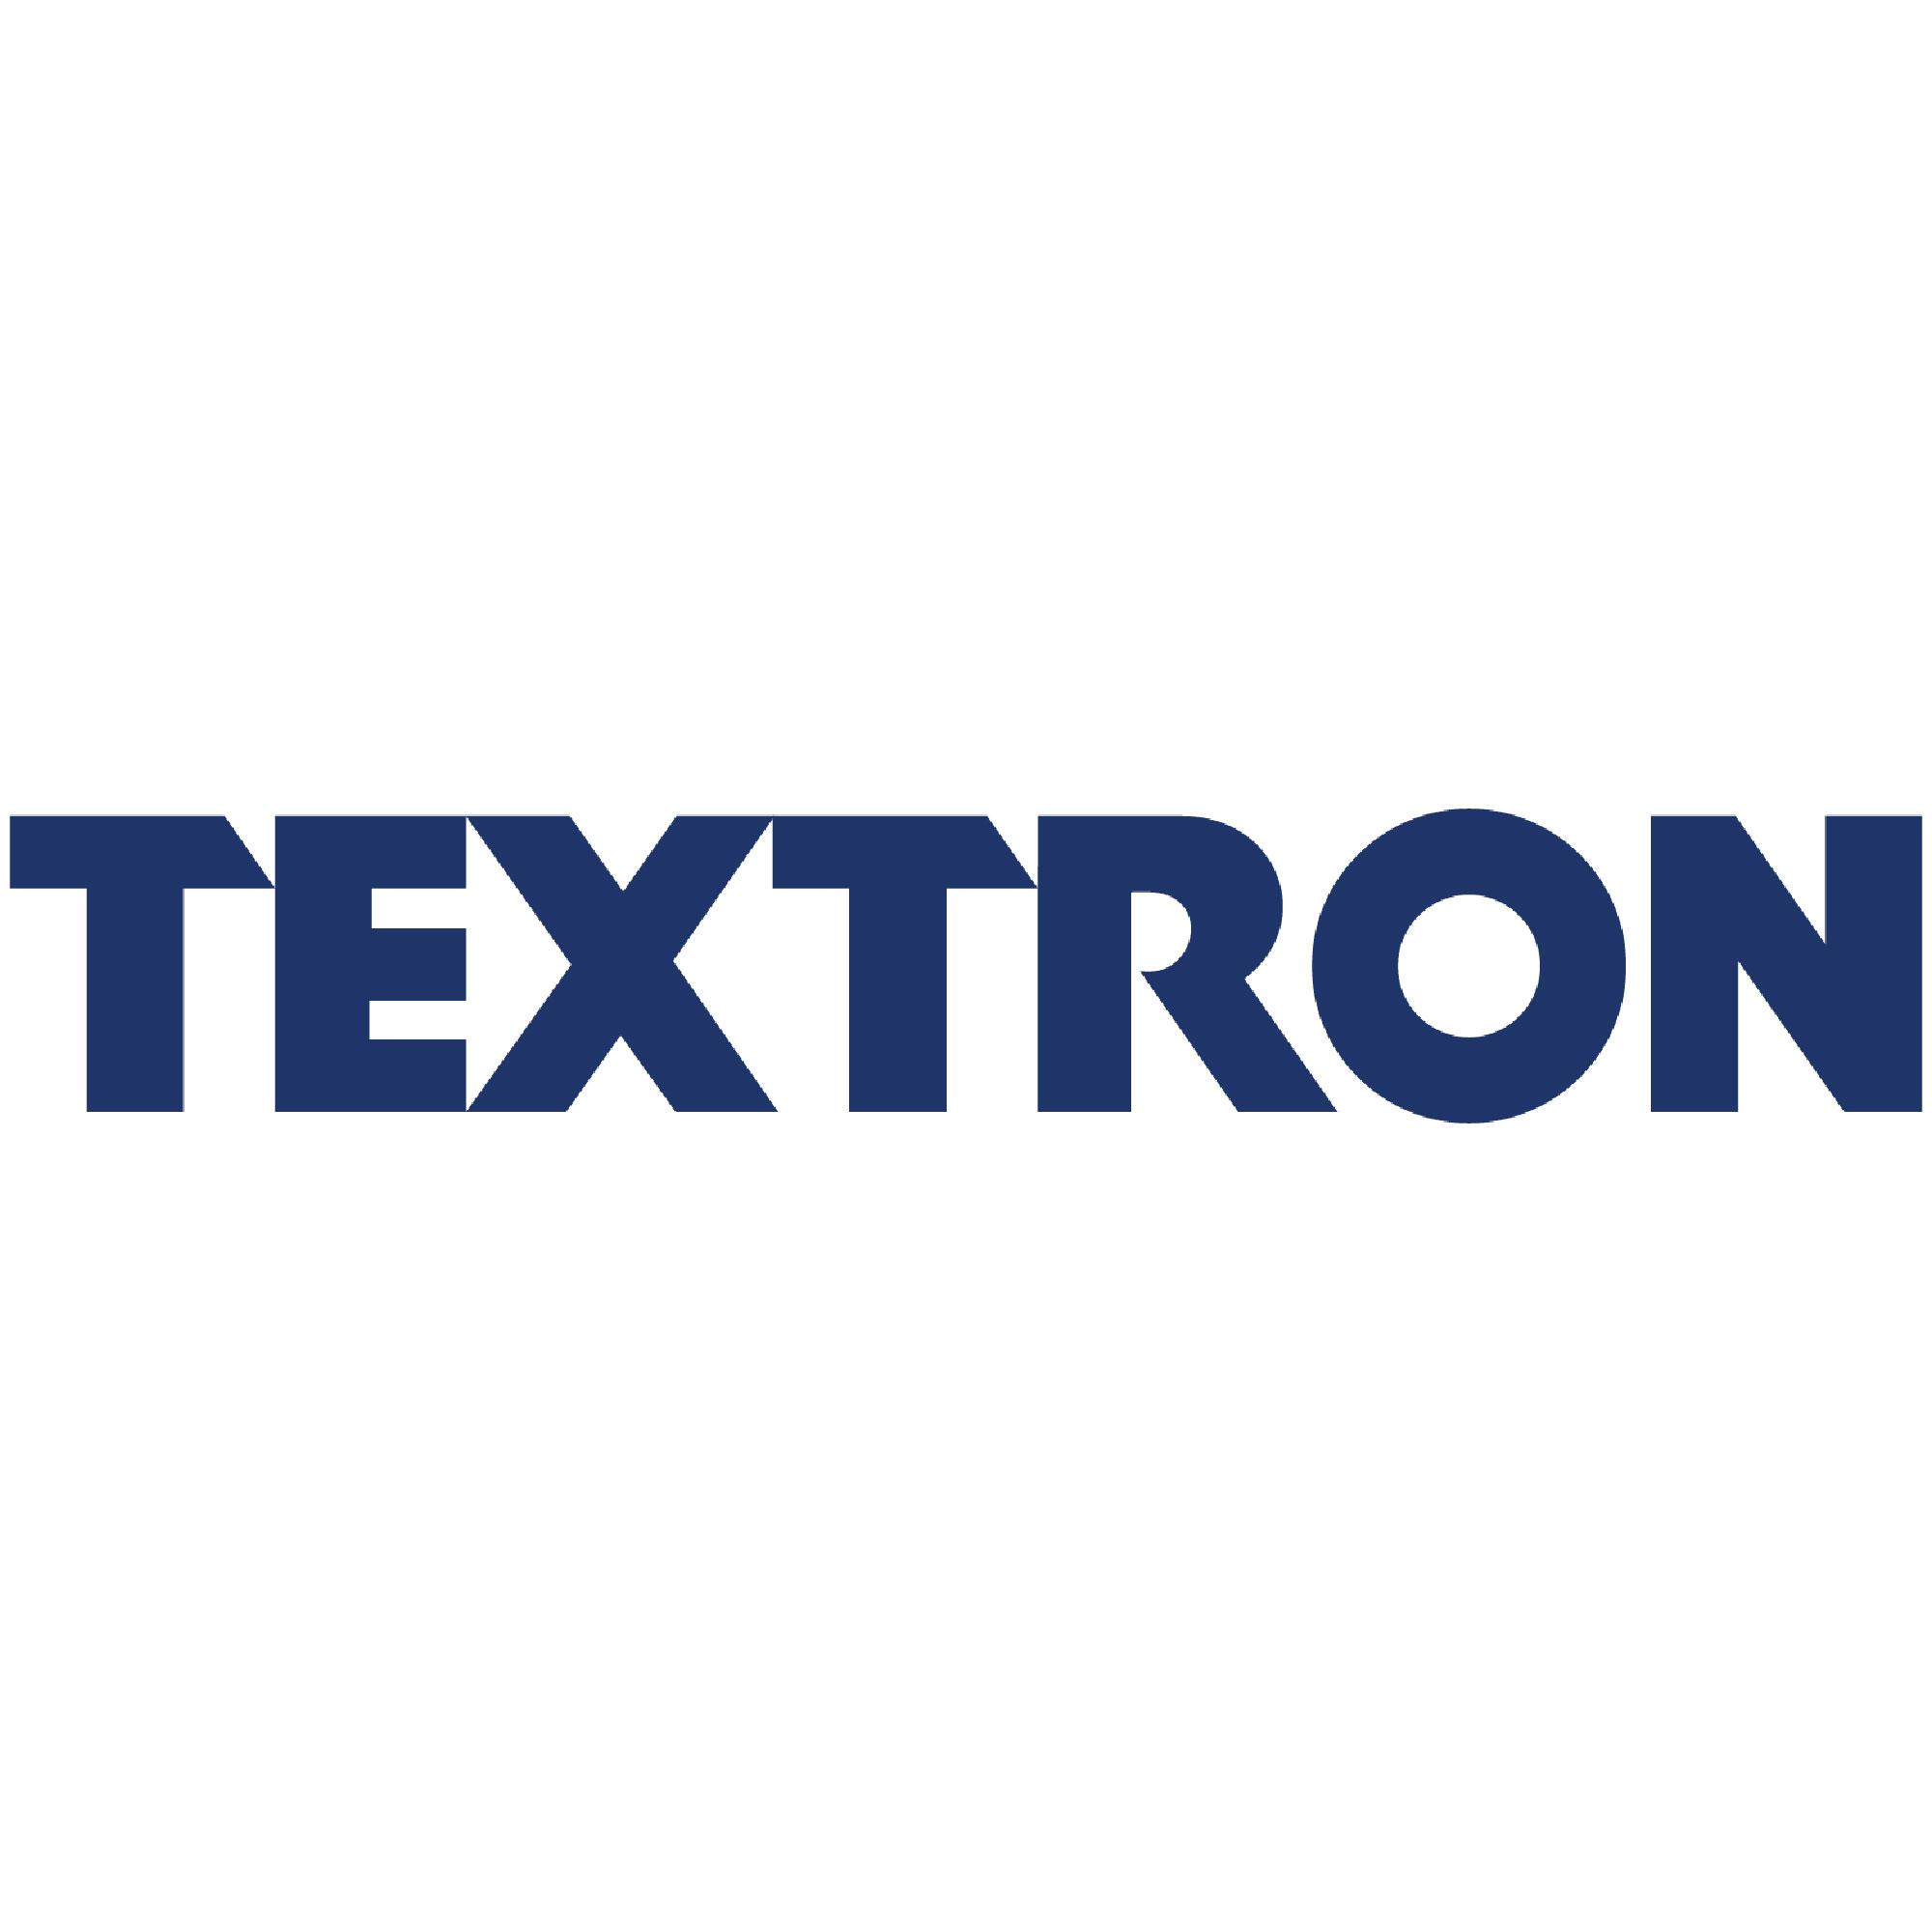 Textron